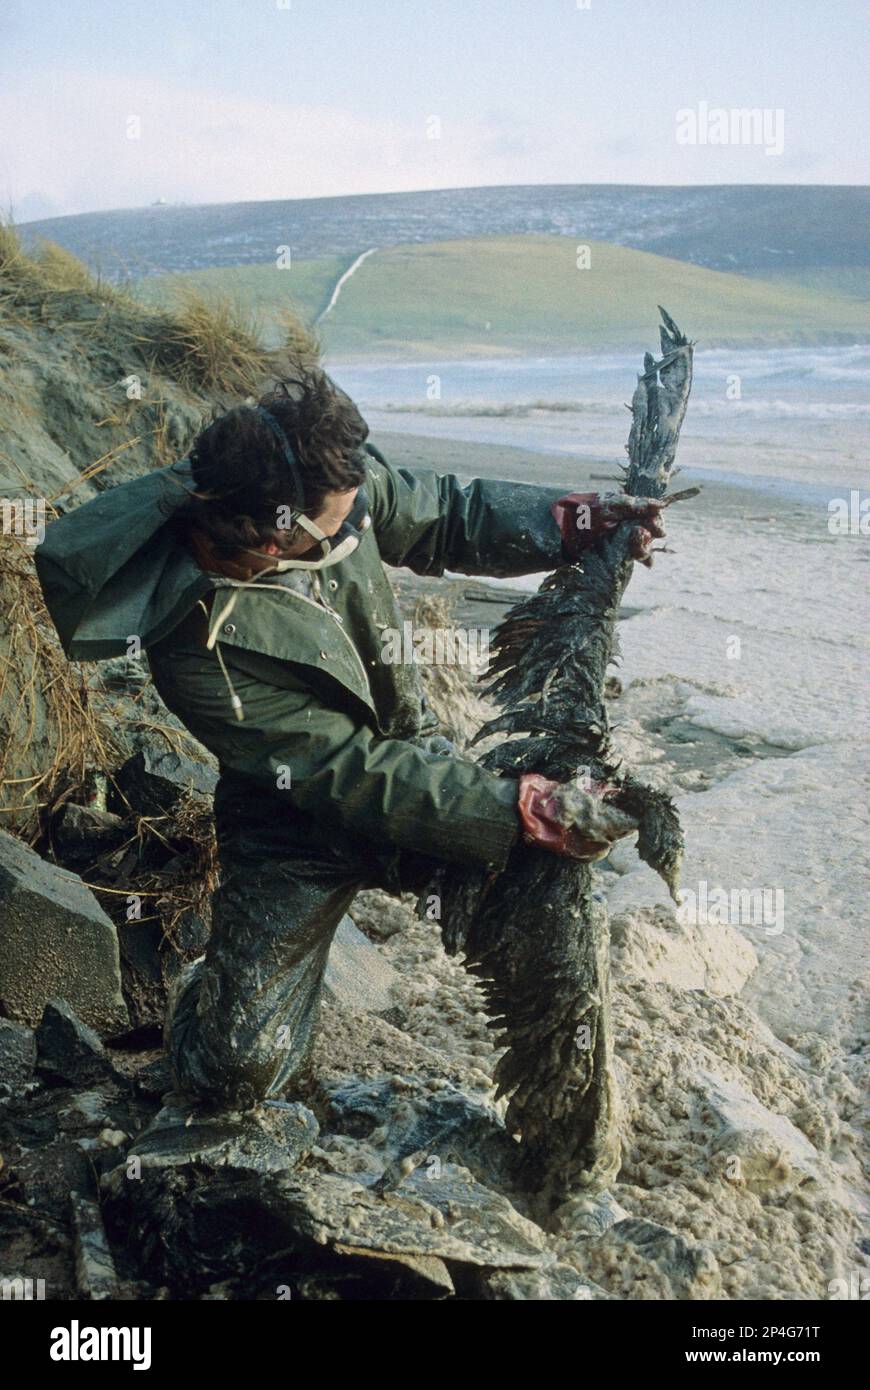 Uccello oliato morto tenuto da una persona sulla spiaggia dopo il disastro Braer, Quendale Bay, Shetland Islands, Scozia, Regno Unito Foto Stock